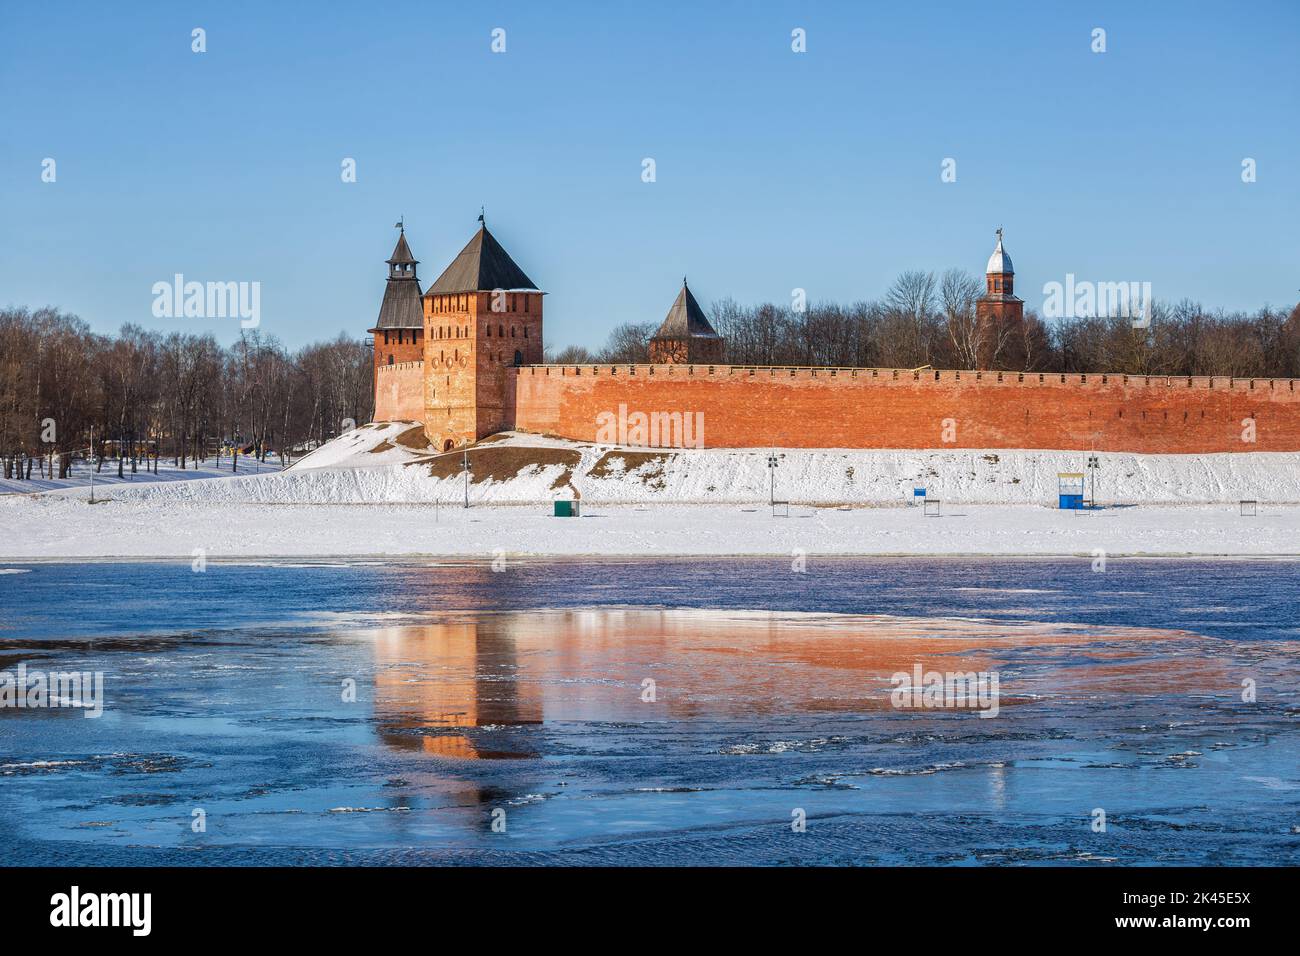 Début du printemps à Veliky Novgorod. Les tours du Kremlin de Novgorod se reflètent dans les flotteurs de glace Banque D'Images